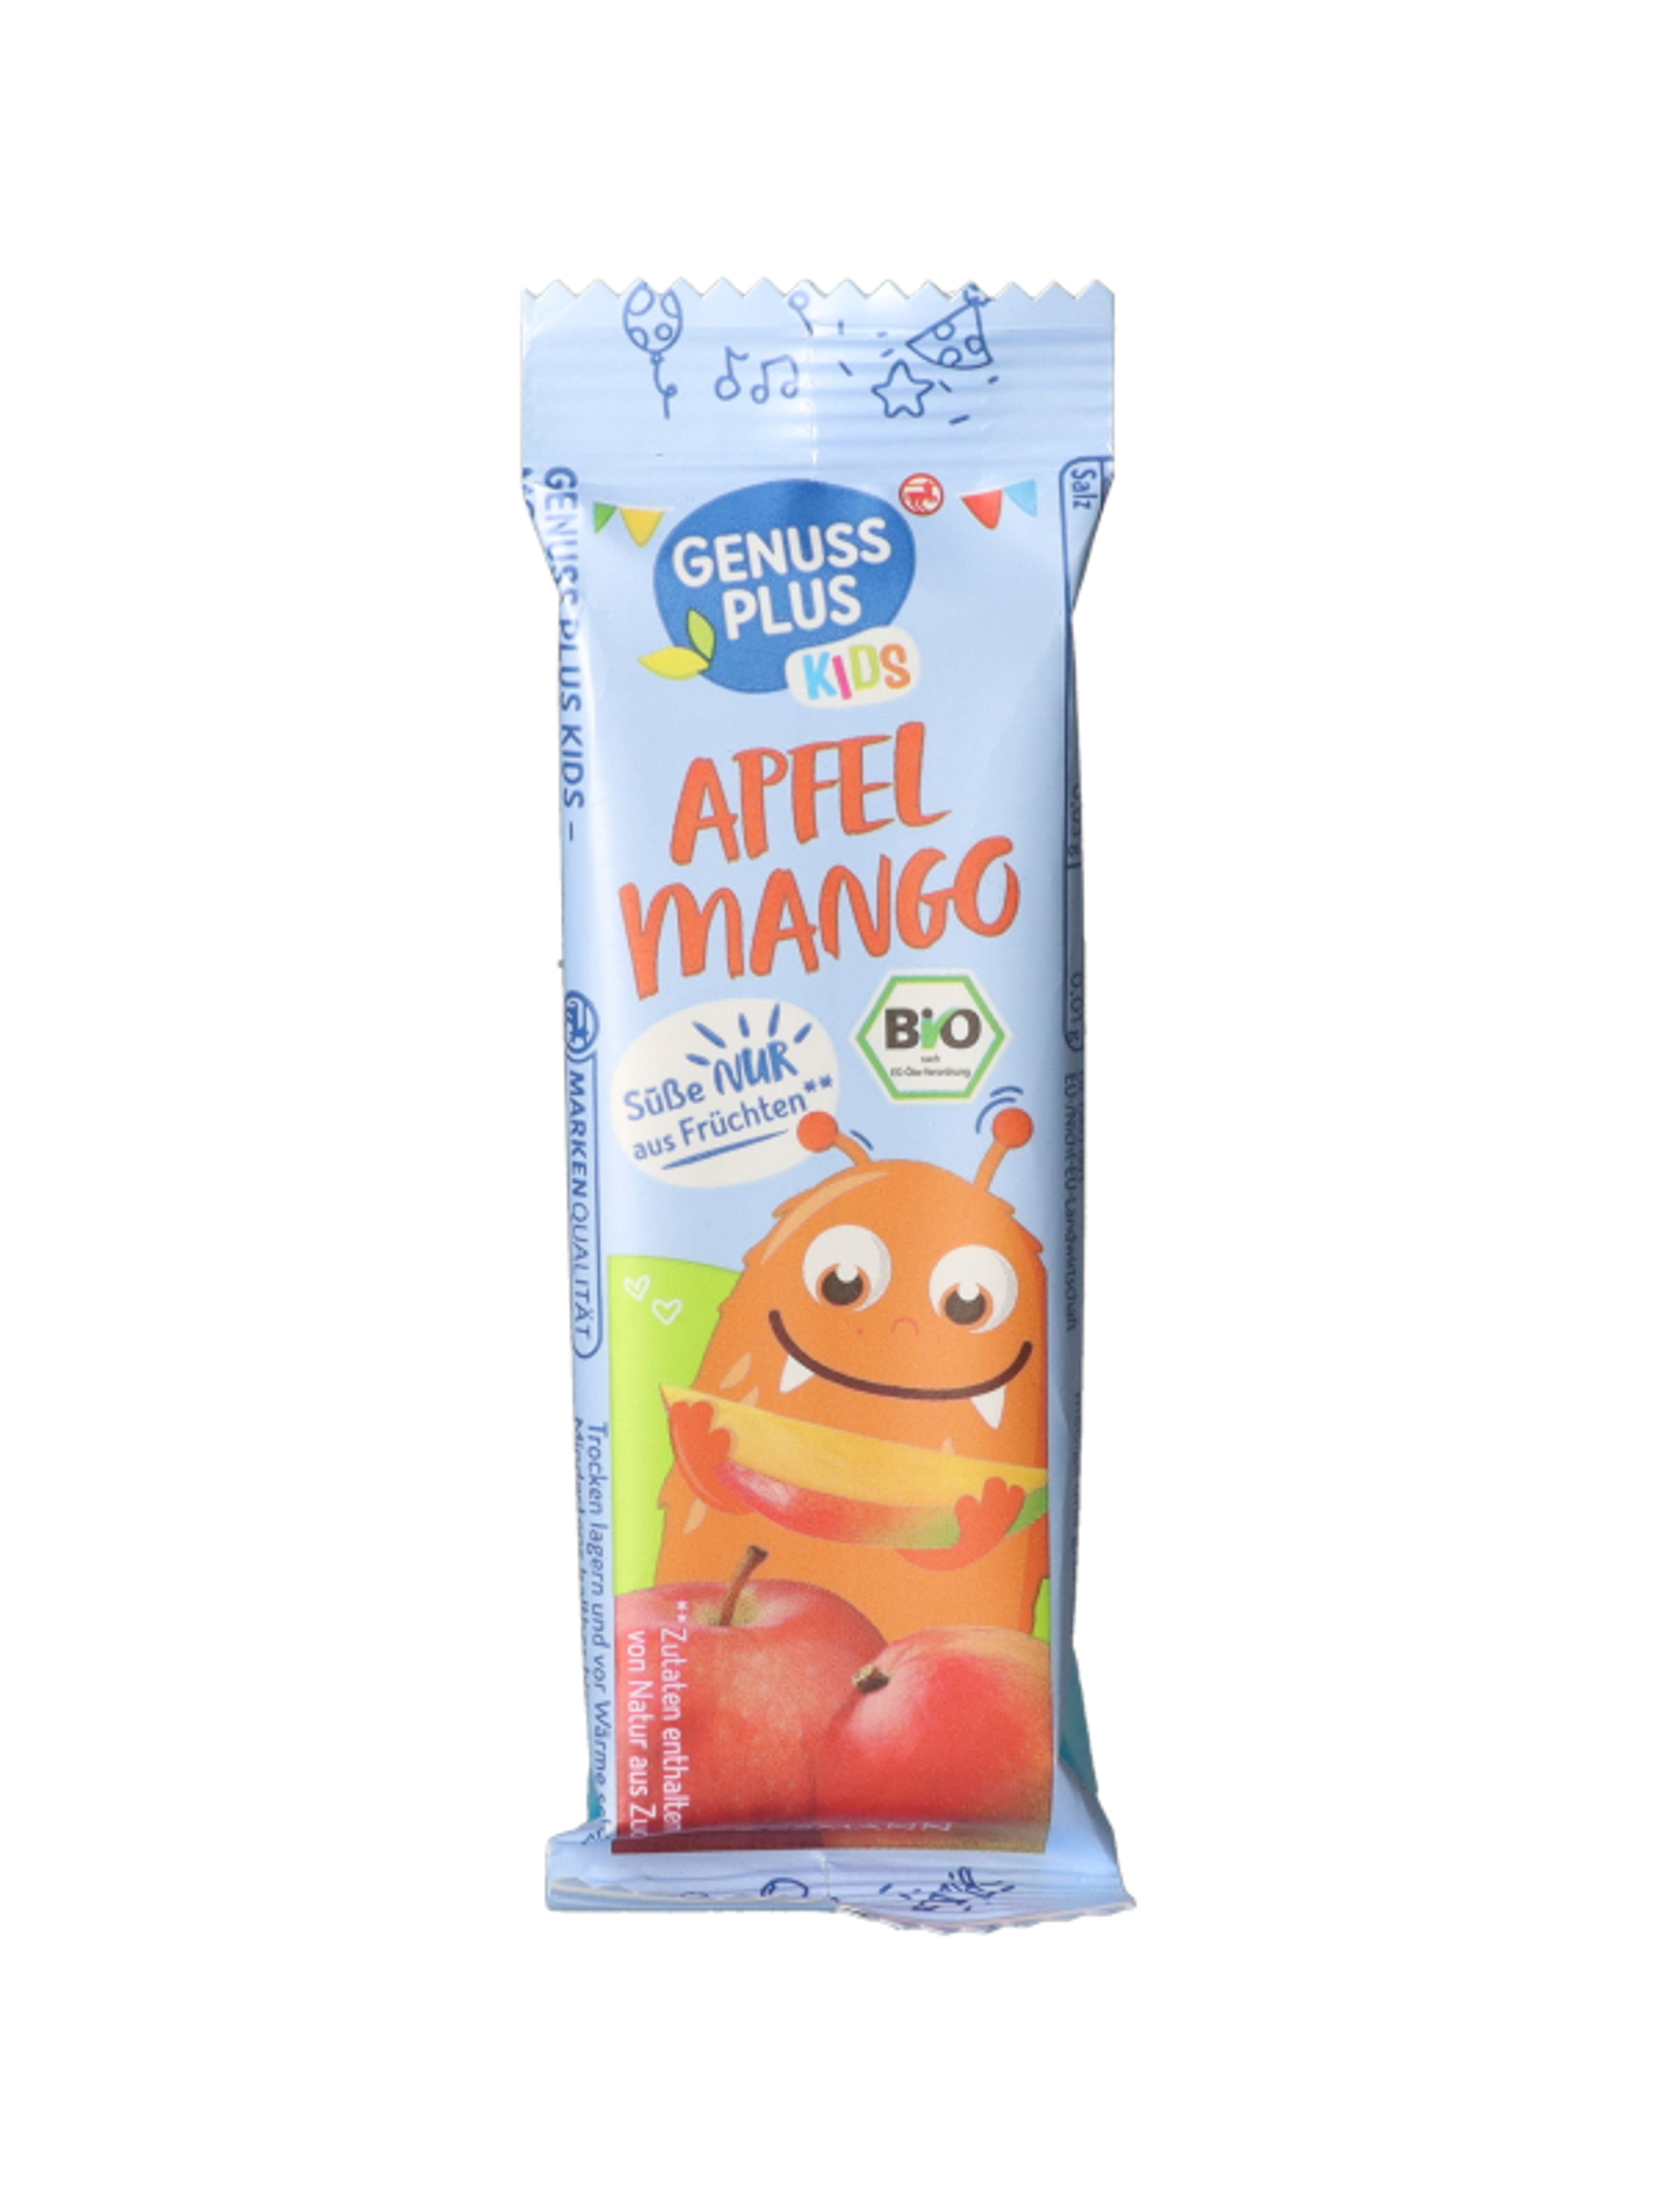 BIO Almás-mangós gyümölcsös szelet 3 éves kortól
**Hozzáadott cukrot nem tartalmaz